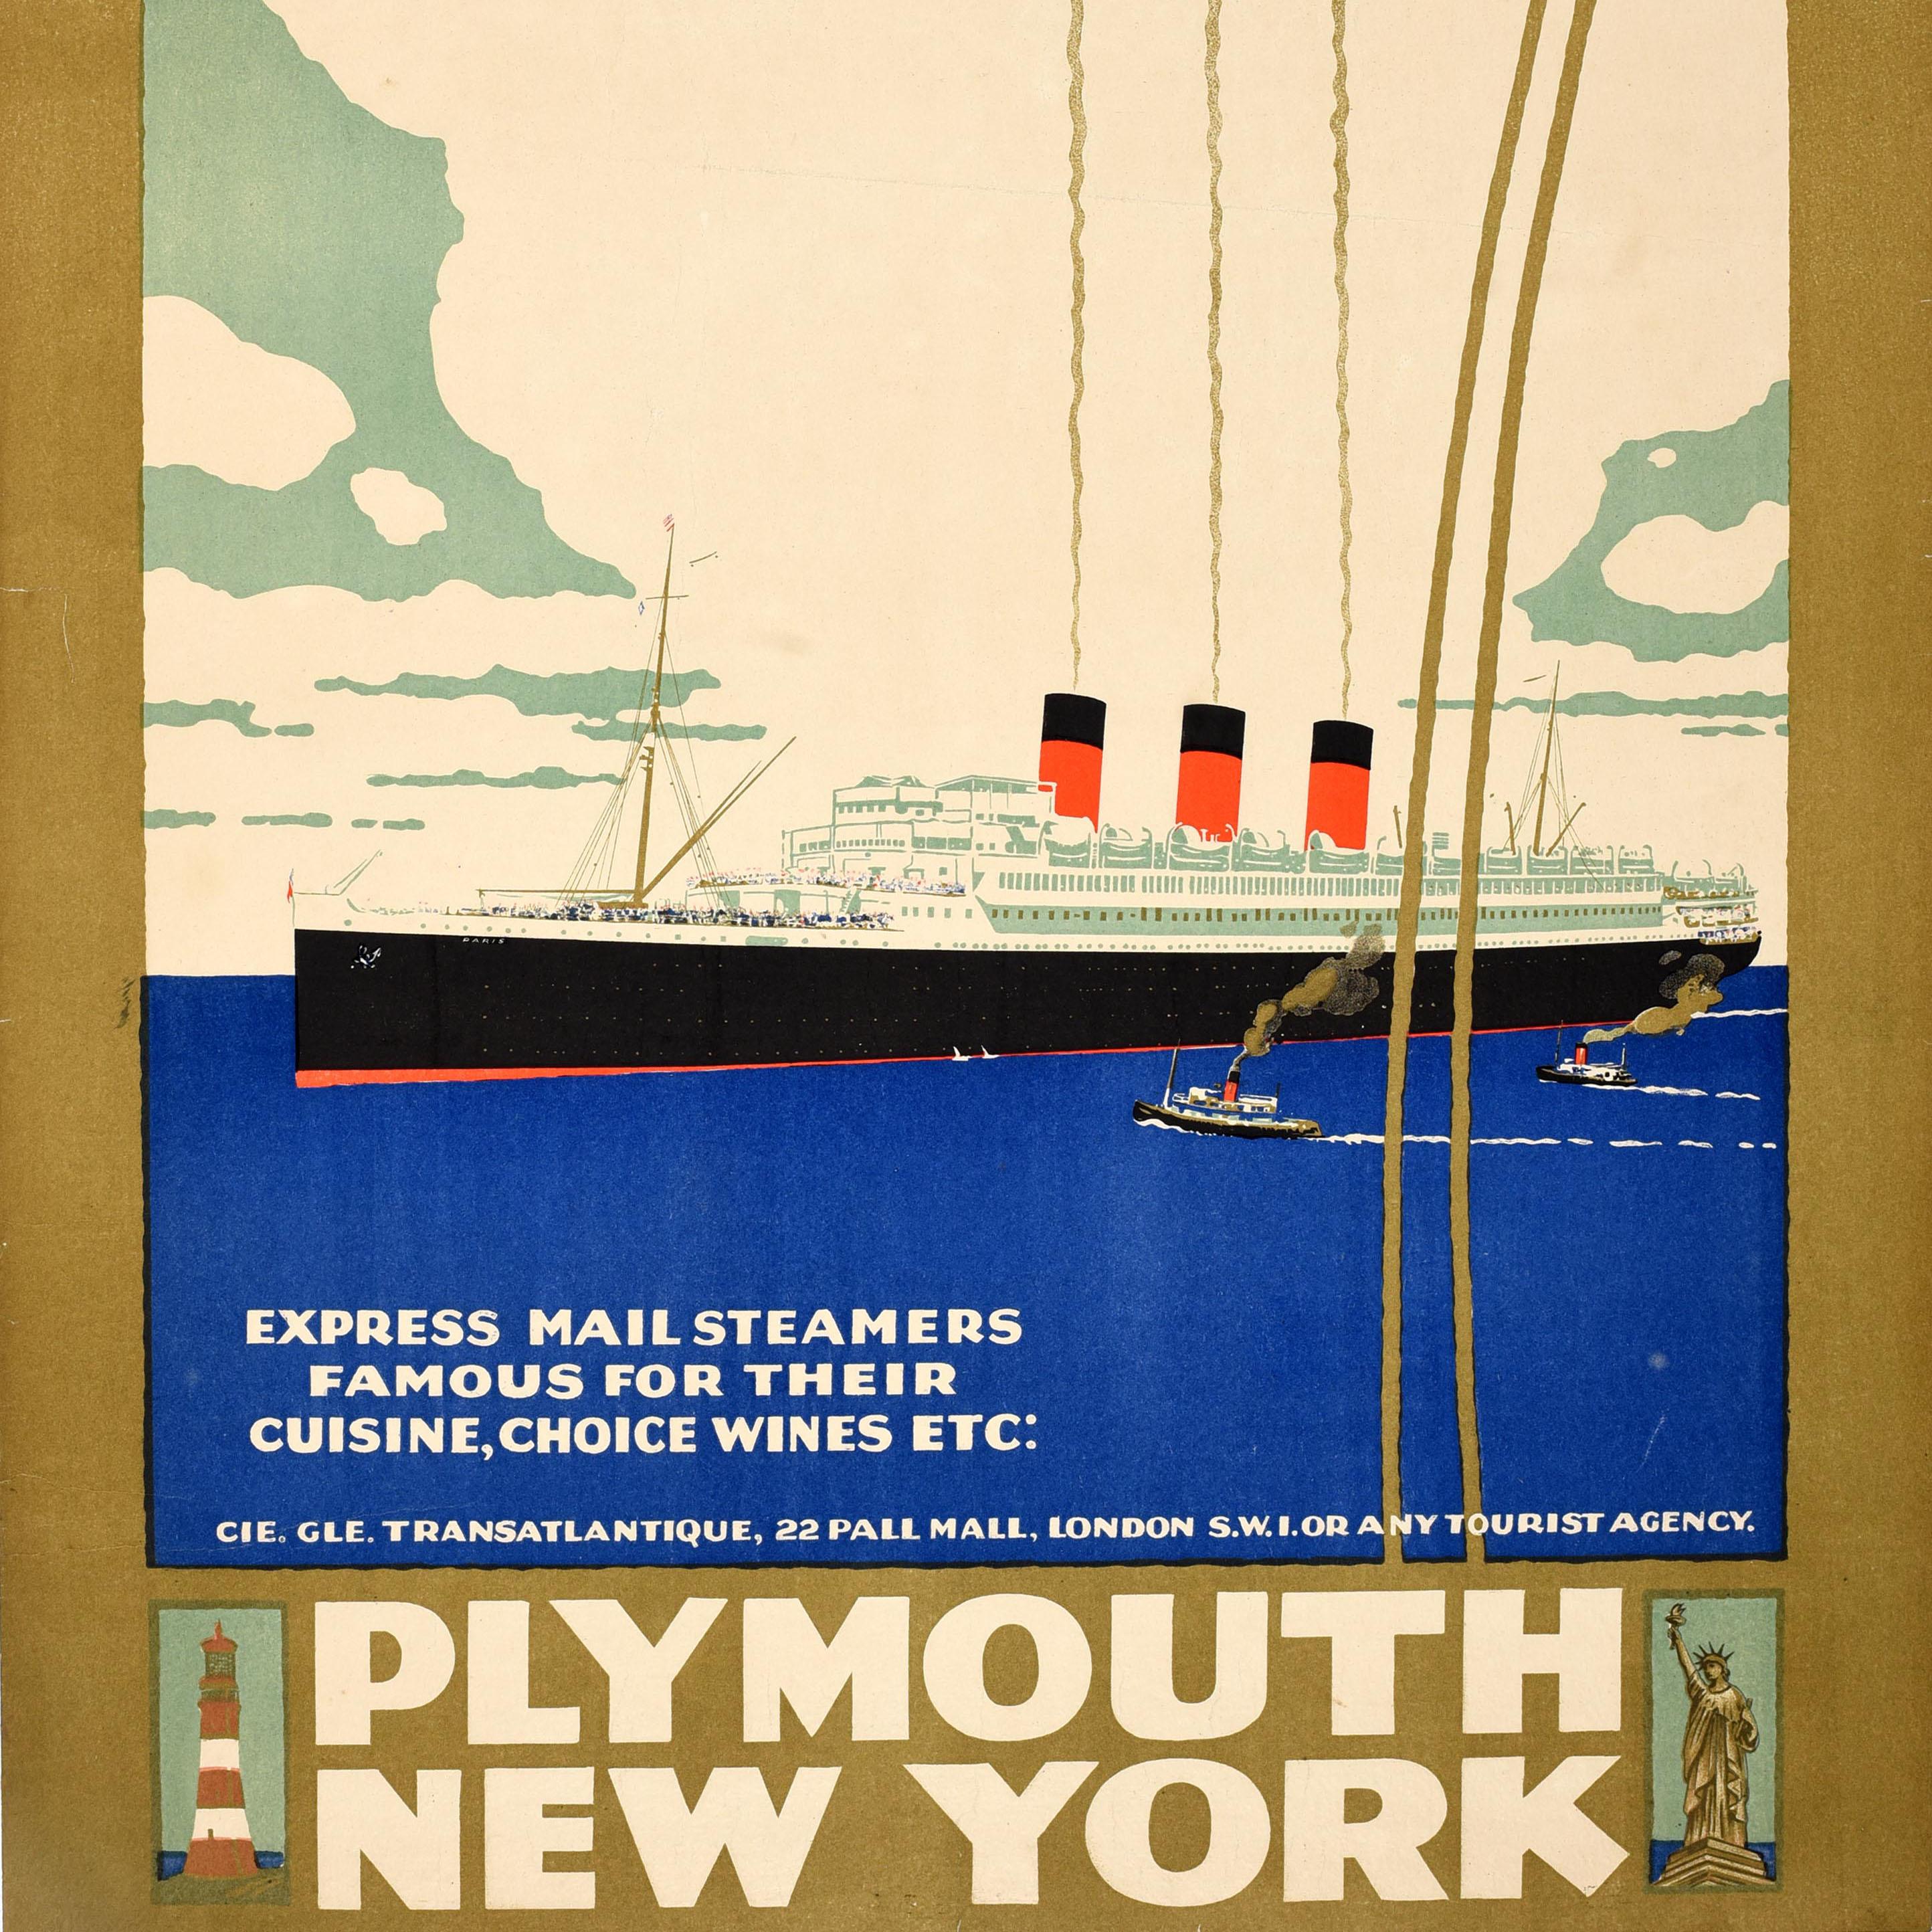 Original Vintage Kreuzfahrt Plakat Werbung Plymouth New York ausgestellt von Compagnie Generale Transatlantique Französisch Linie CGT. Elegantes Art-Déco-Design mit einem Ozeandampfer, der mit kleinen Schleppern auf dem ruhigen blauen Wasser fährt,